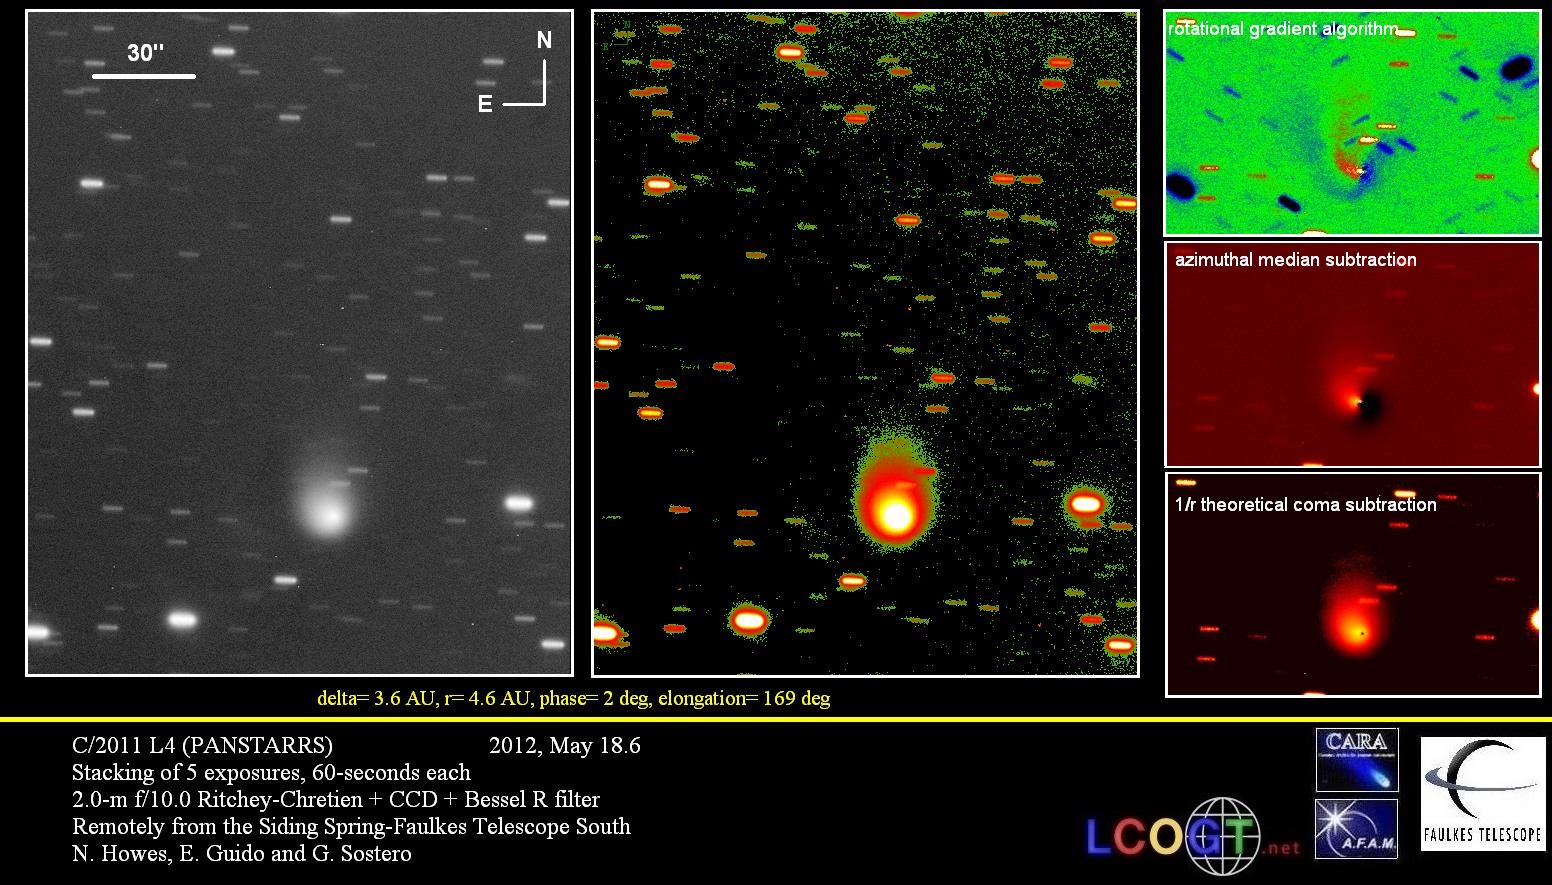 Comet C/2011 L4